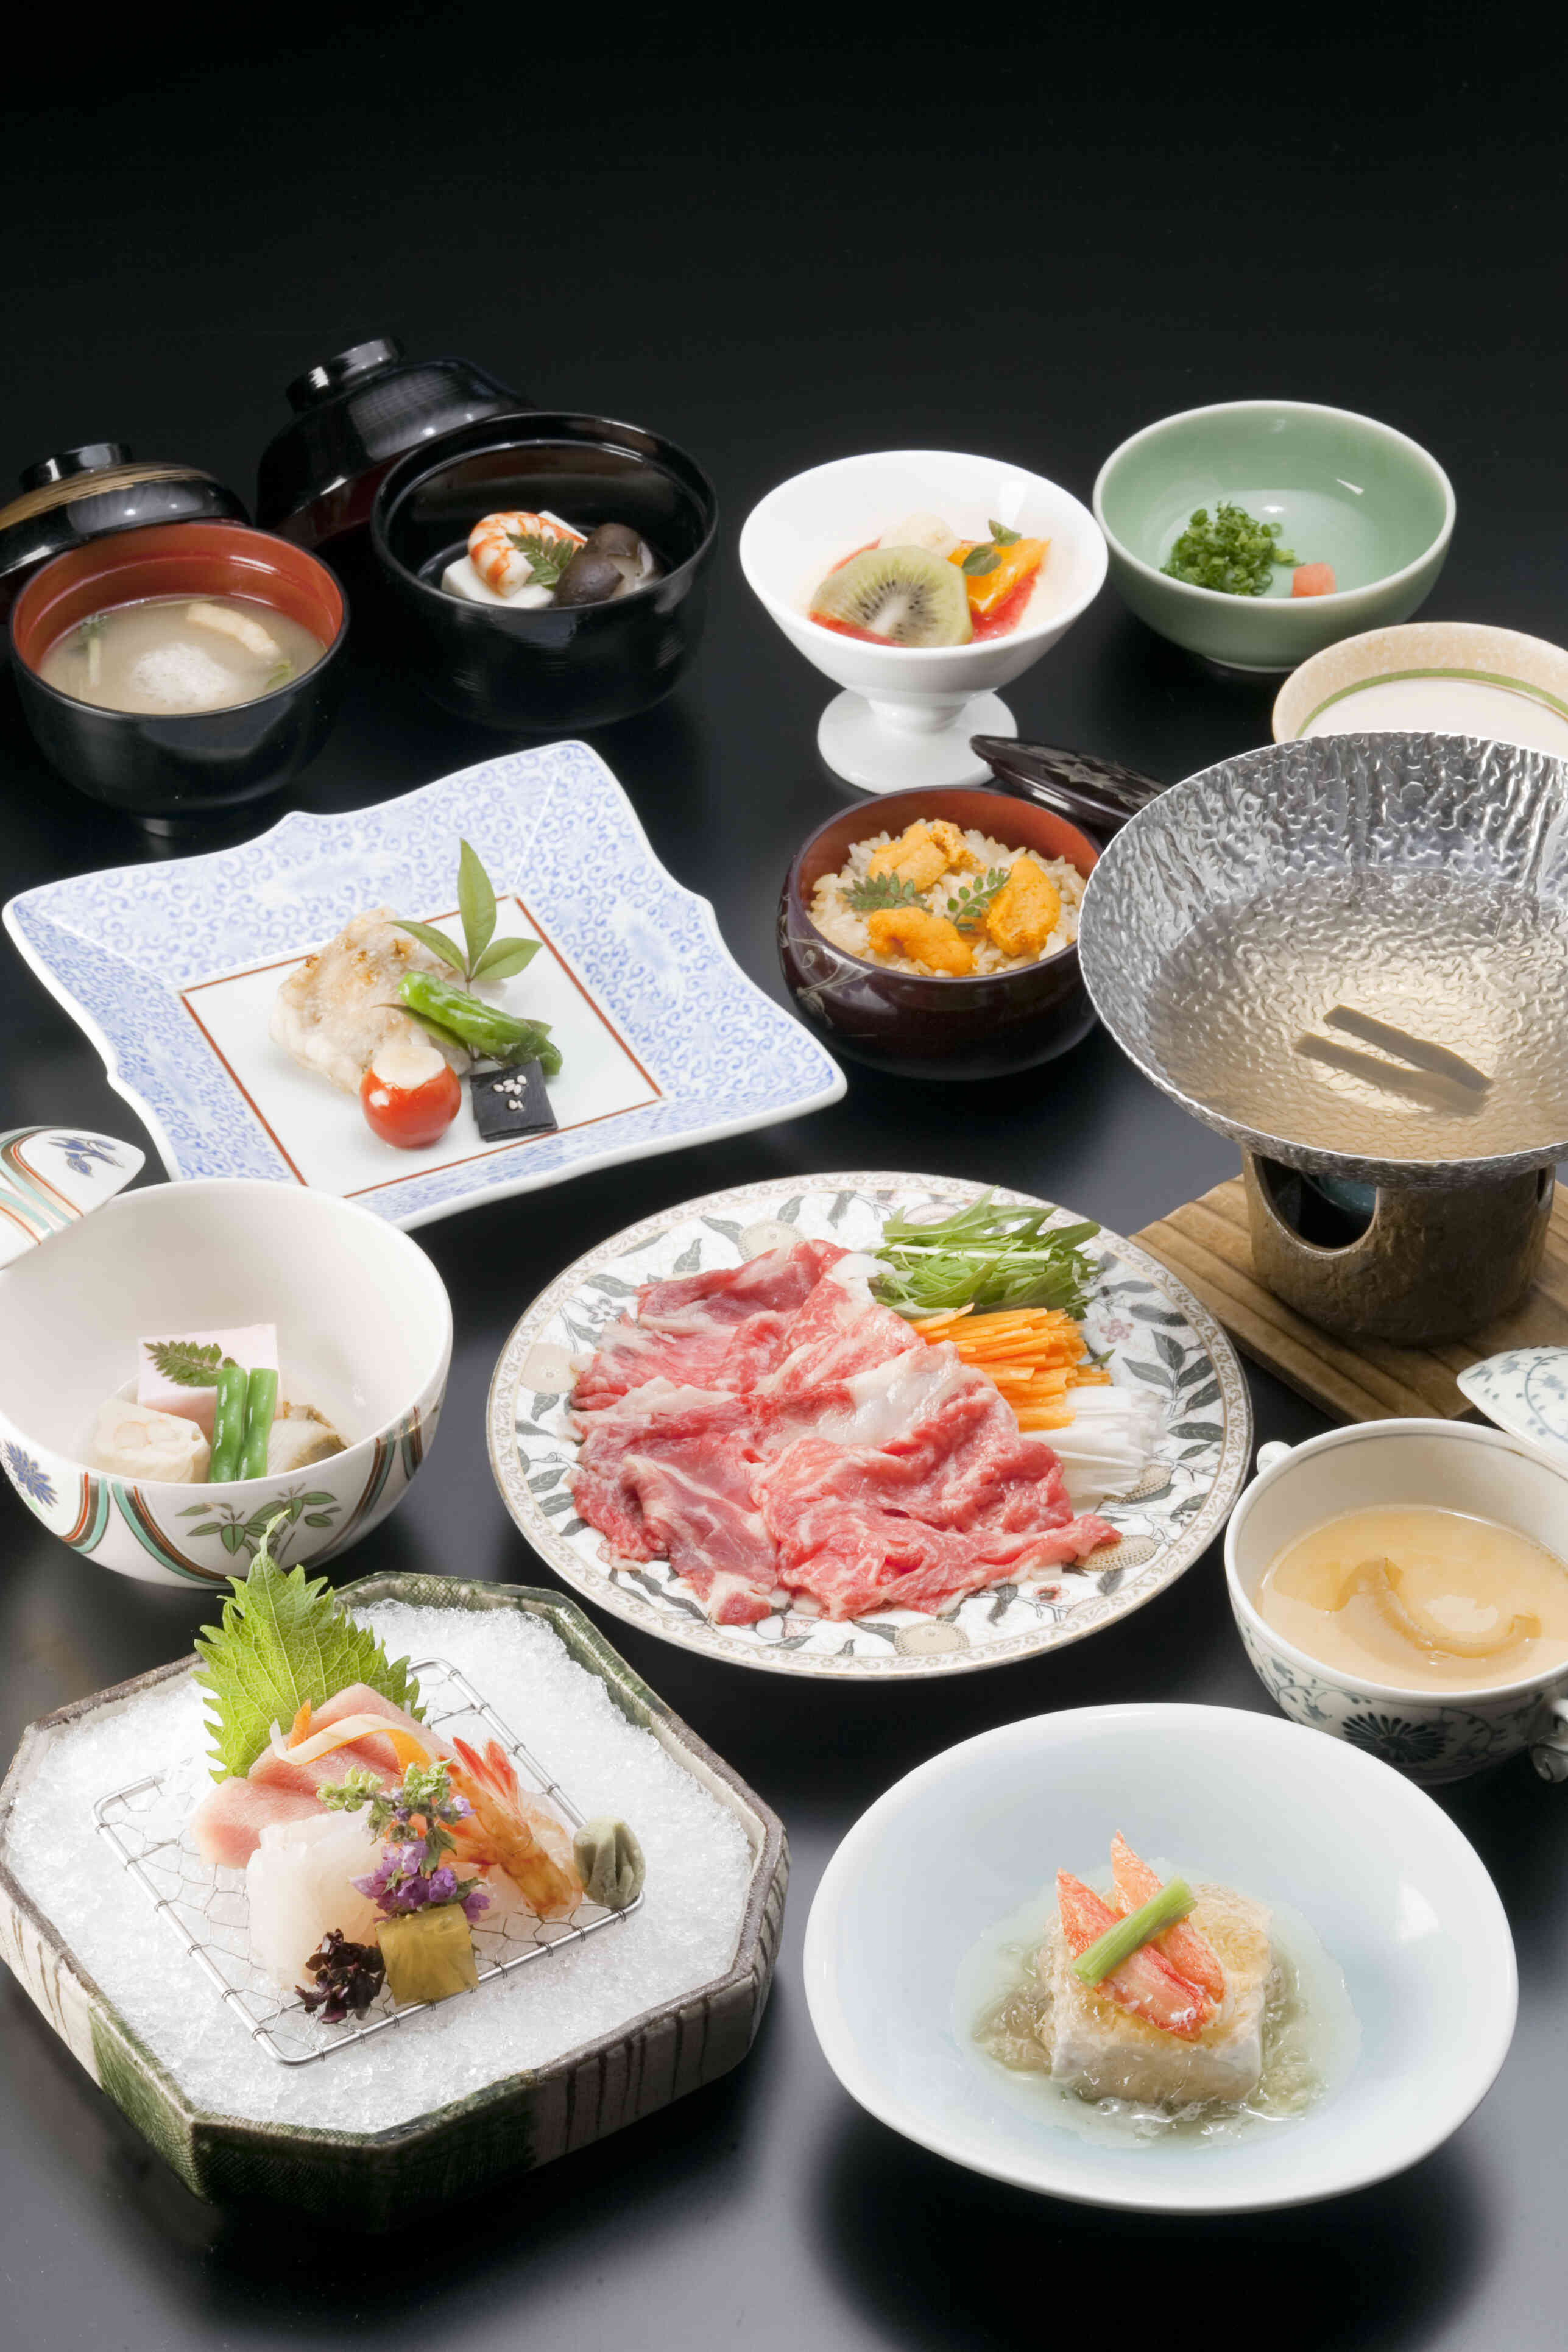 駿河湾の魚介類・箱根西麓野菜などの新鮮な旬の素材から生まれる本格日本料理。